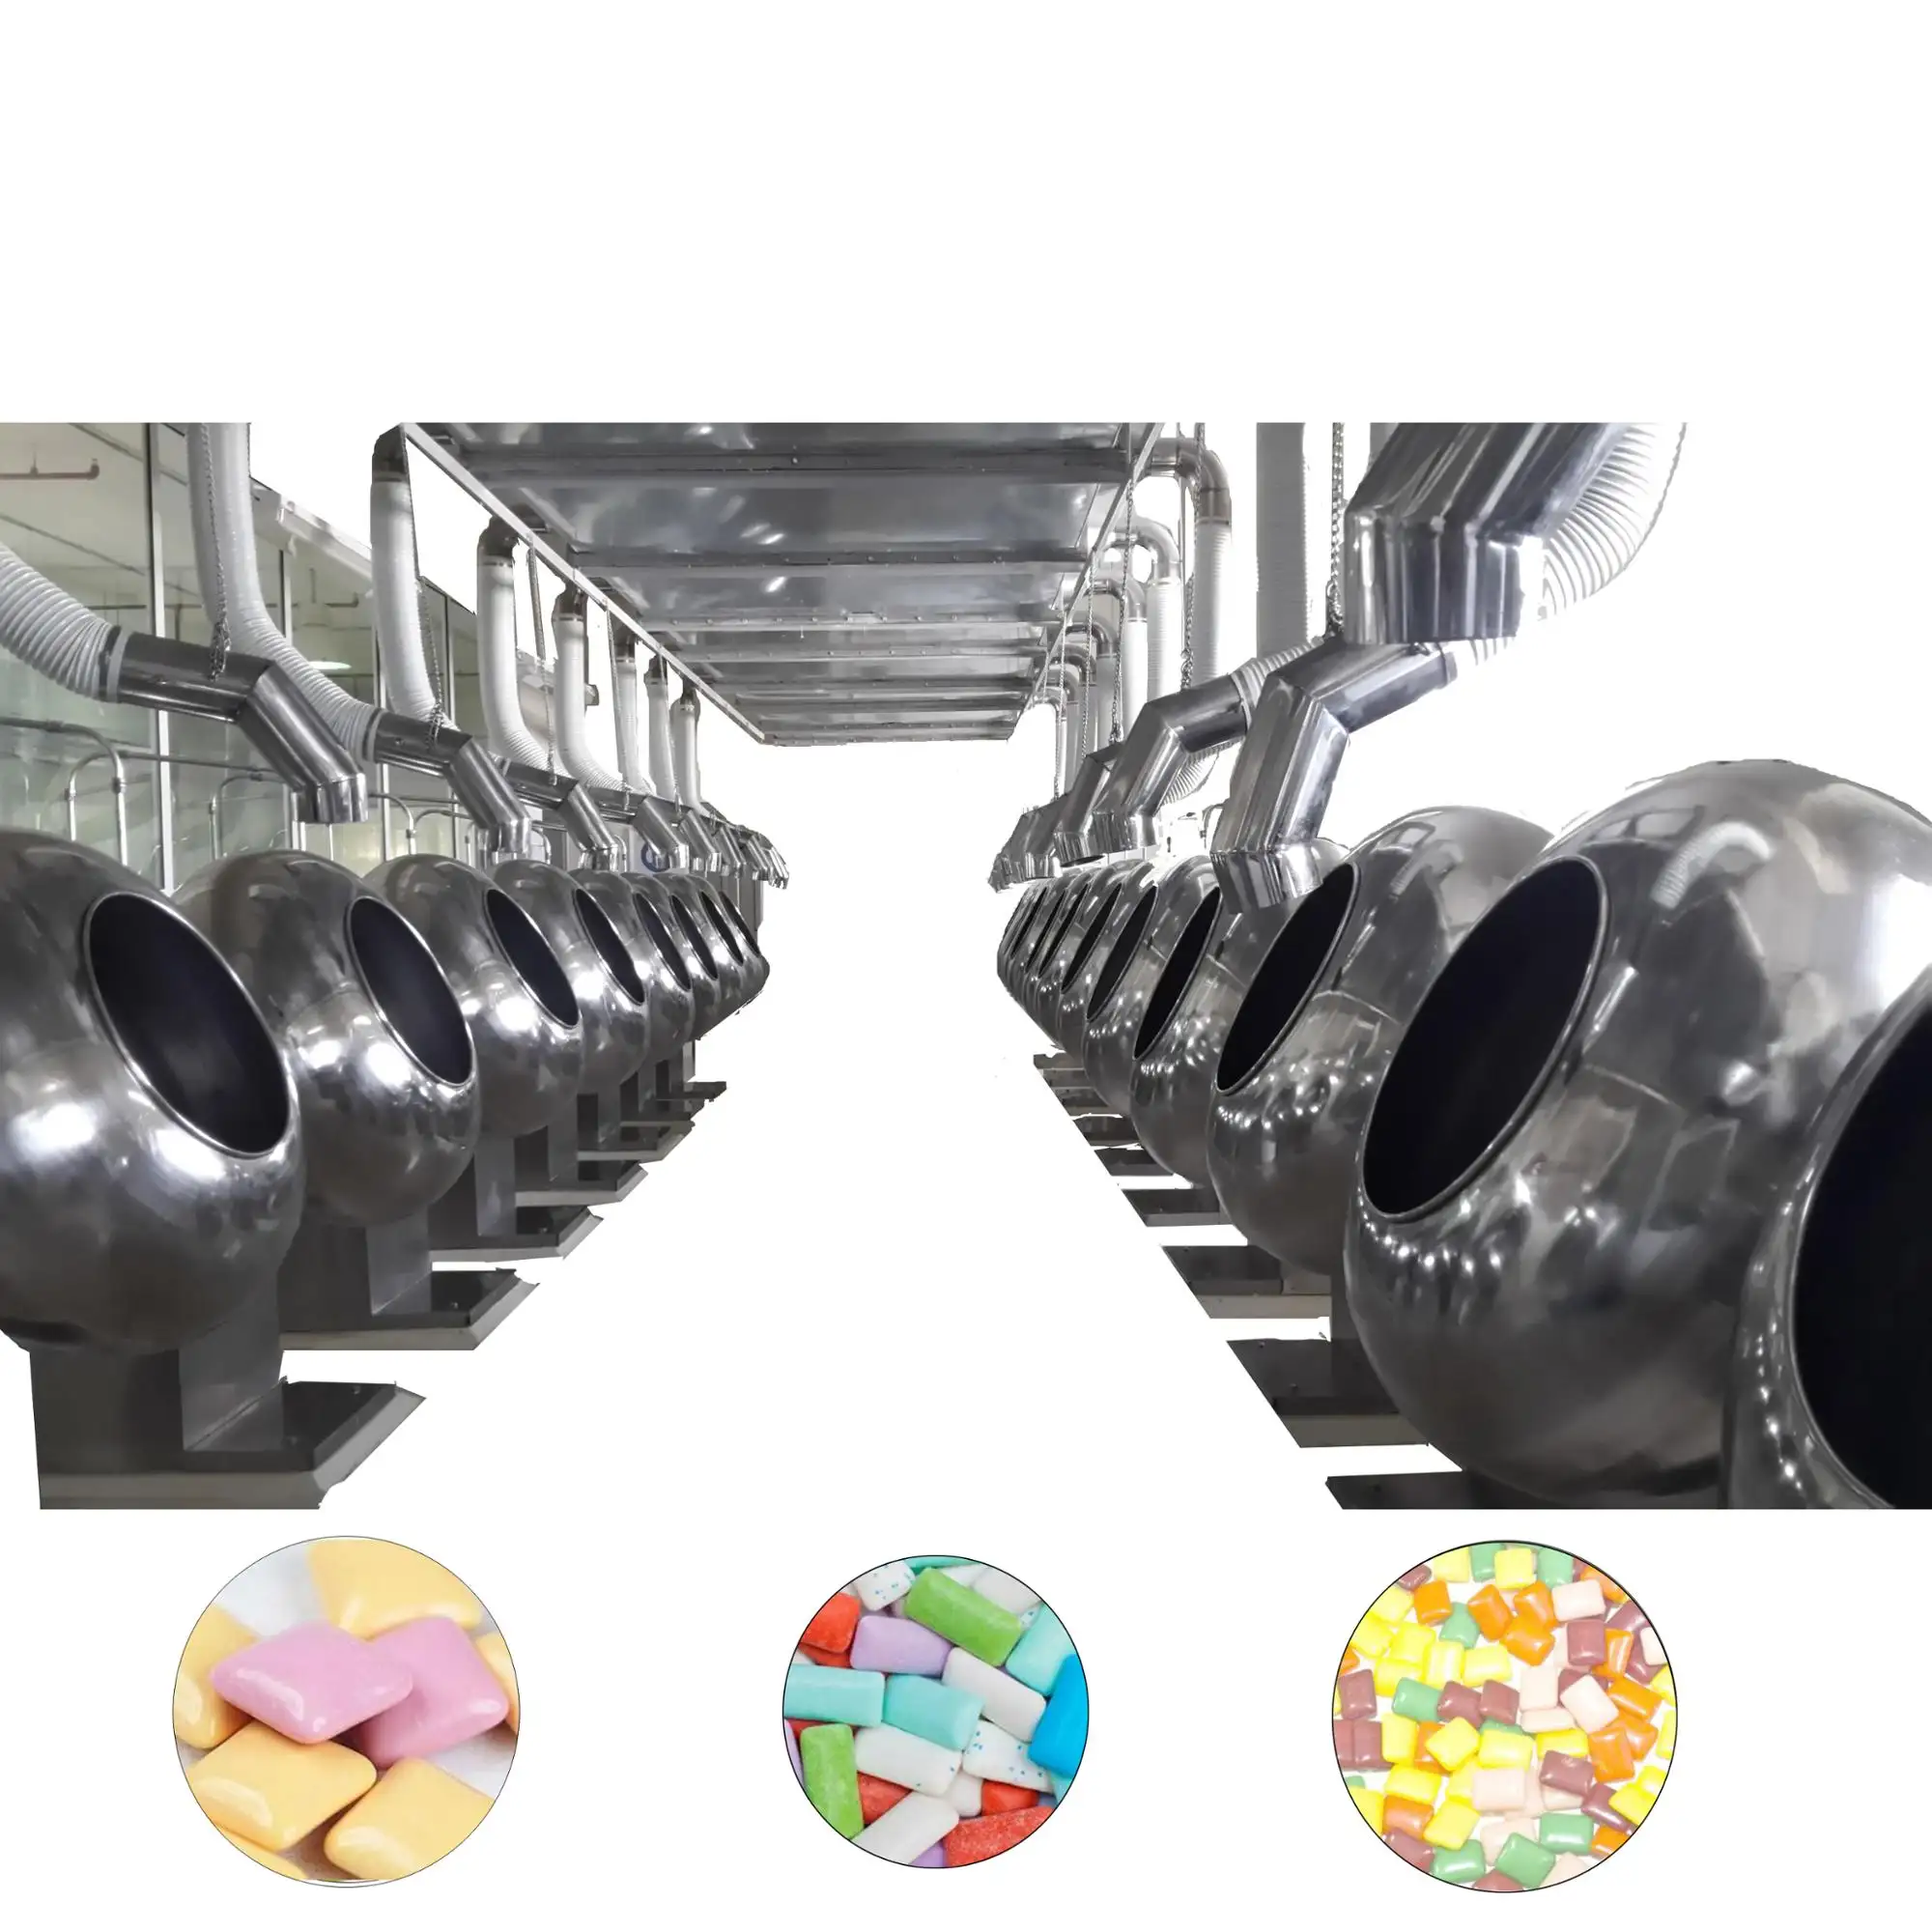 설탕 자유로운 껌 코팅 기계 자일리톨 추잉 검 생산 라인